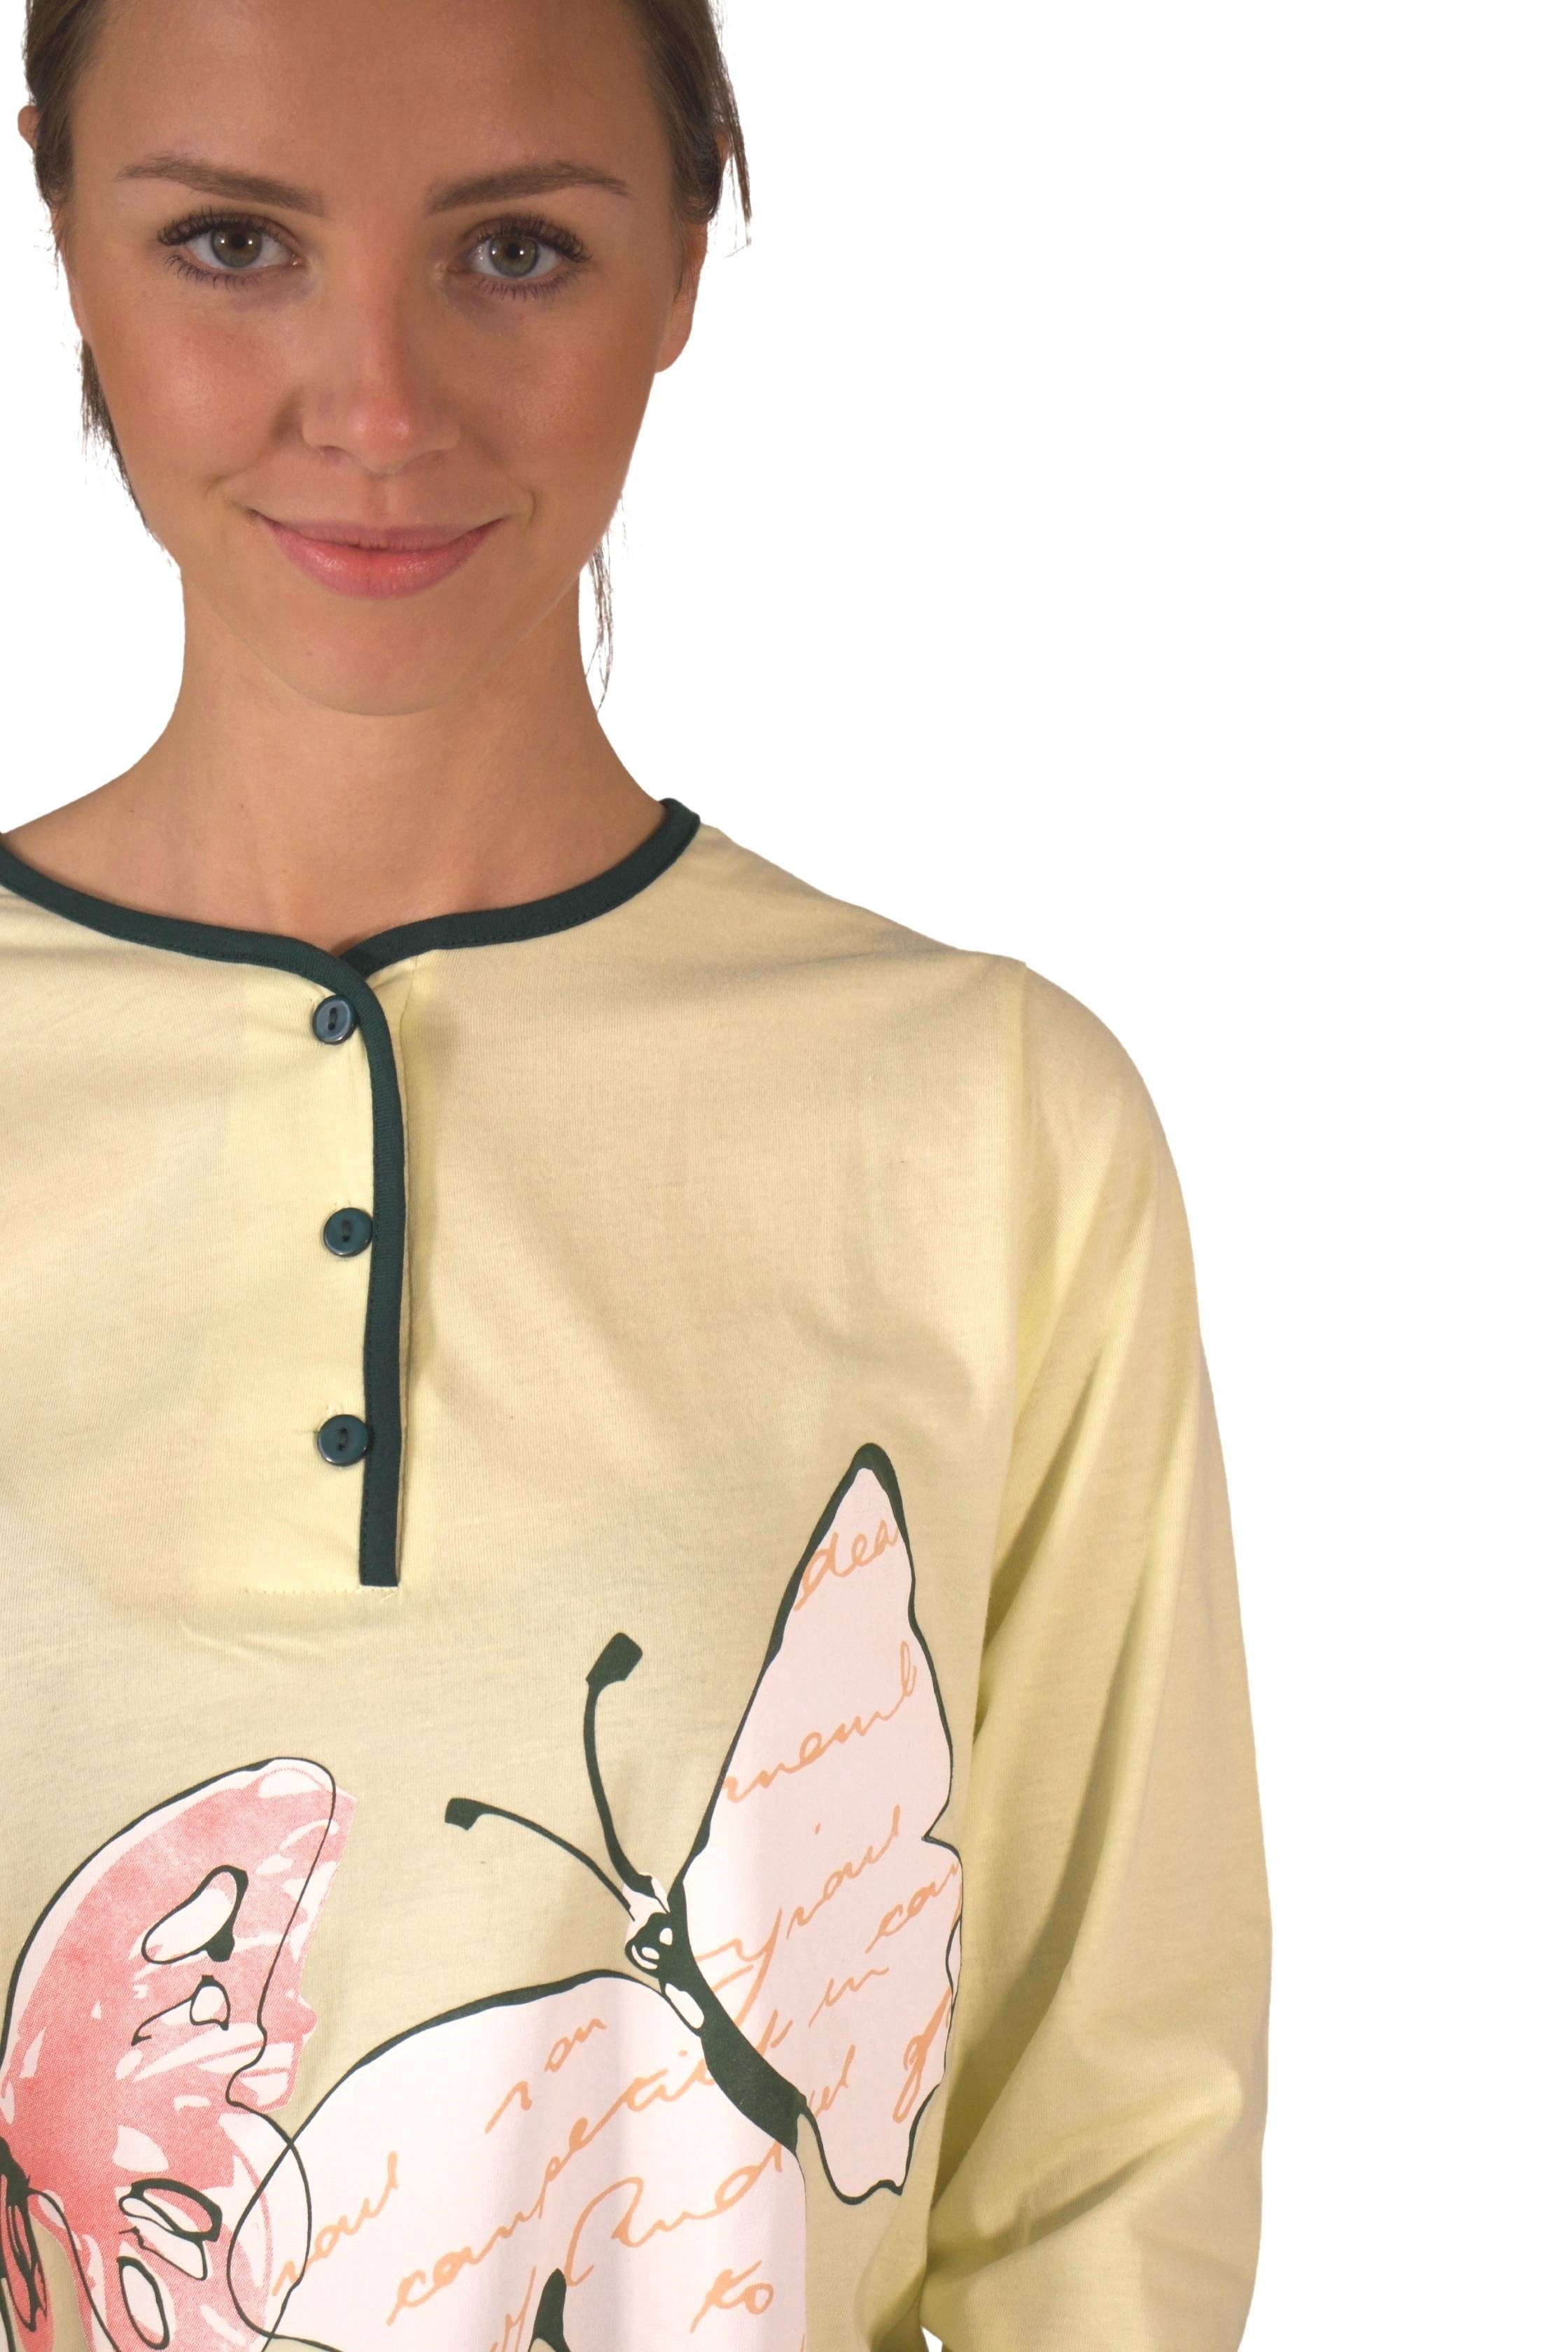 Consult-Tex Nachthemd DW720 BaumwolleJersey bequem zu Damen Nachthemd mintgrün tragen